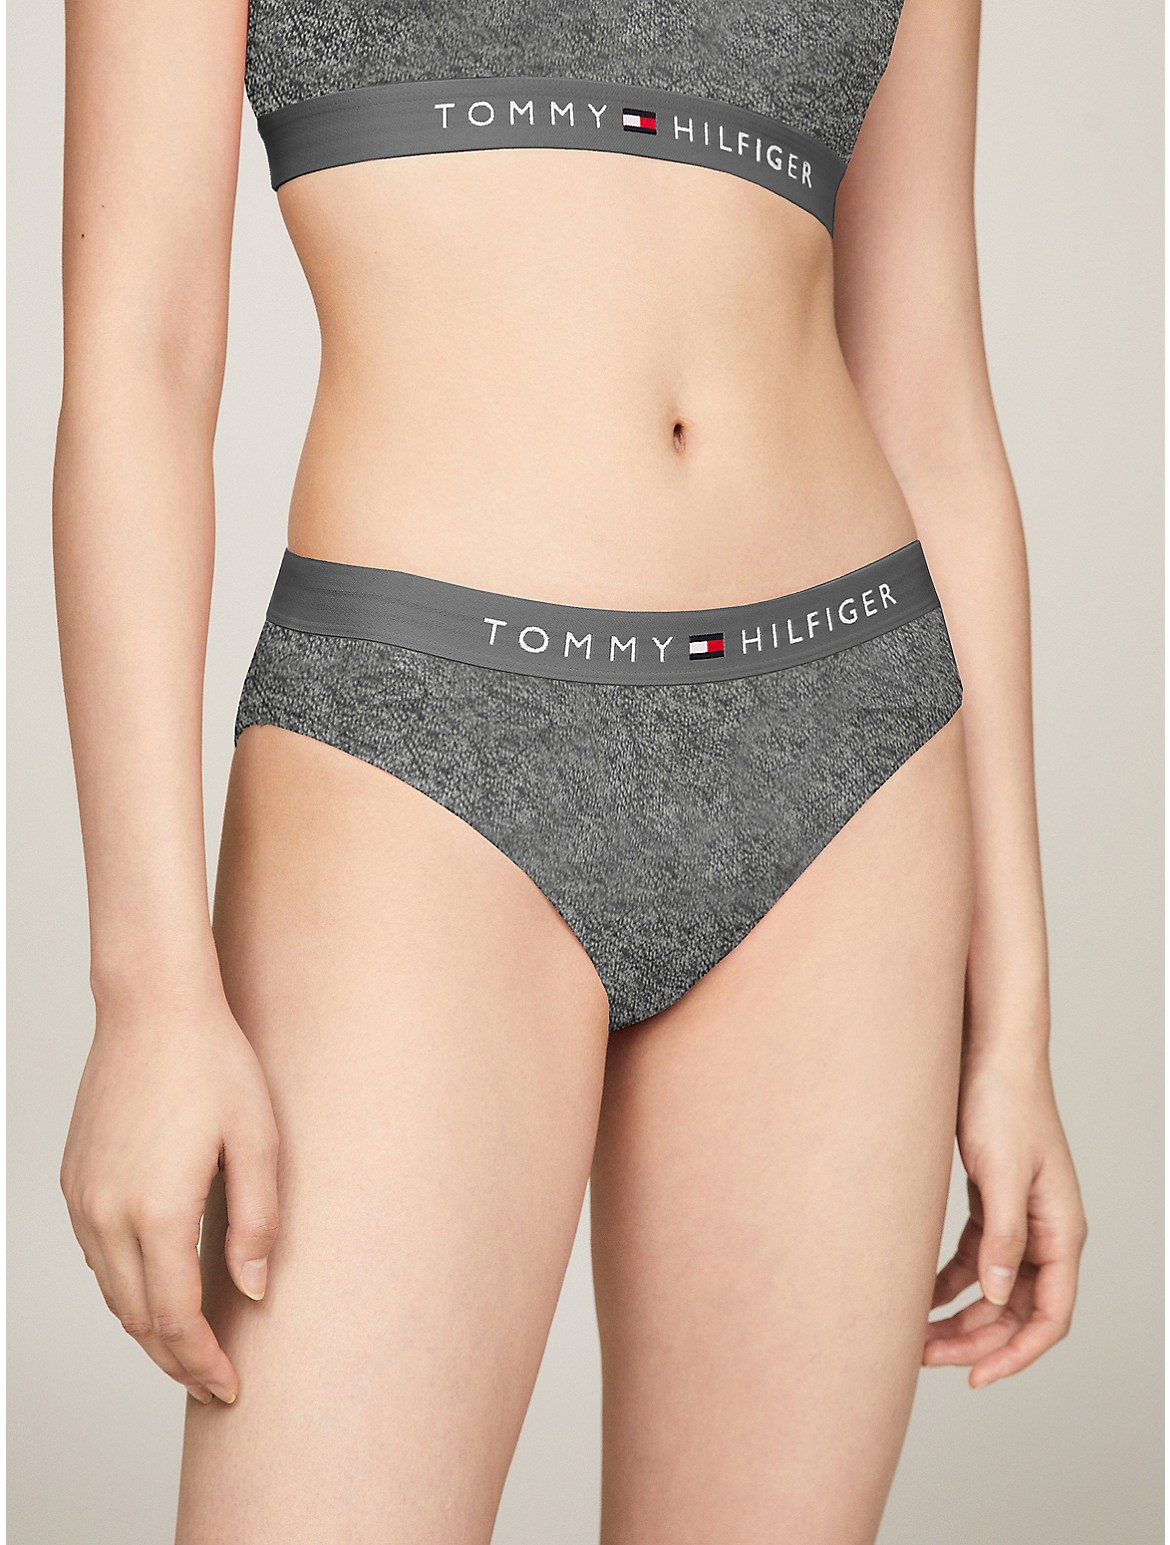 Tommy Hilfiger Women's Logo Bikini - Grey - XXXL